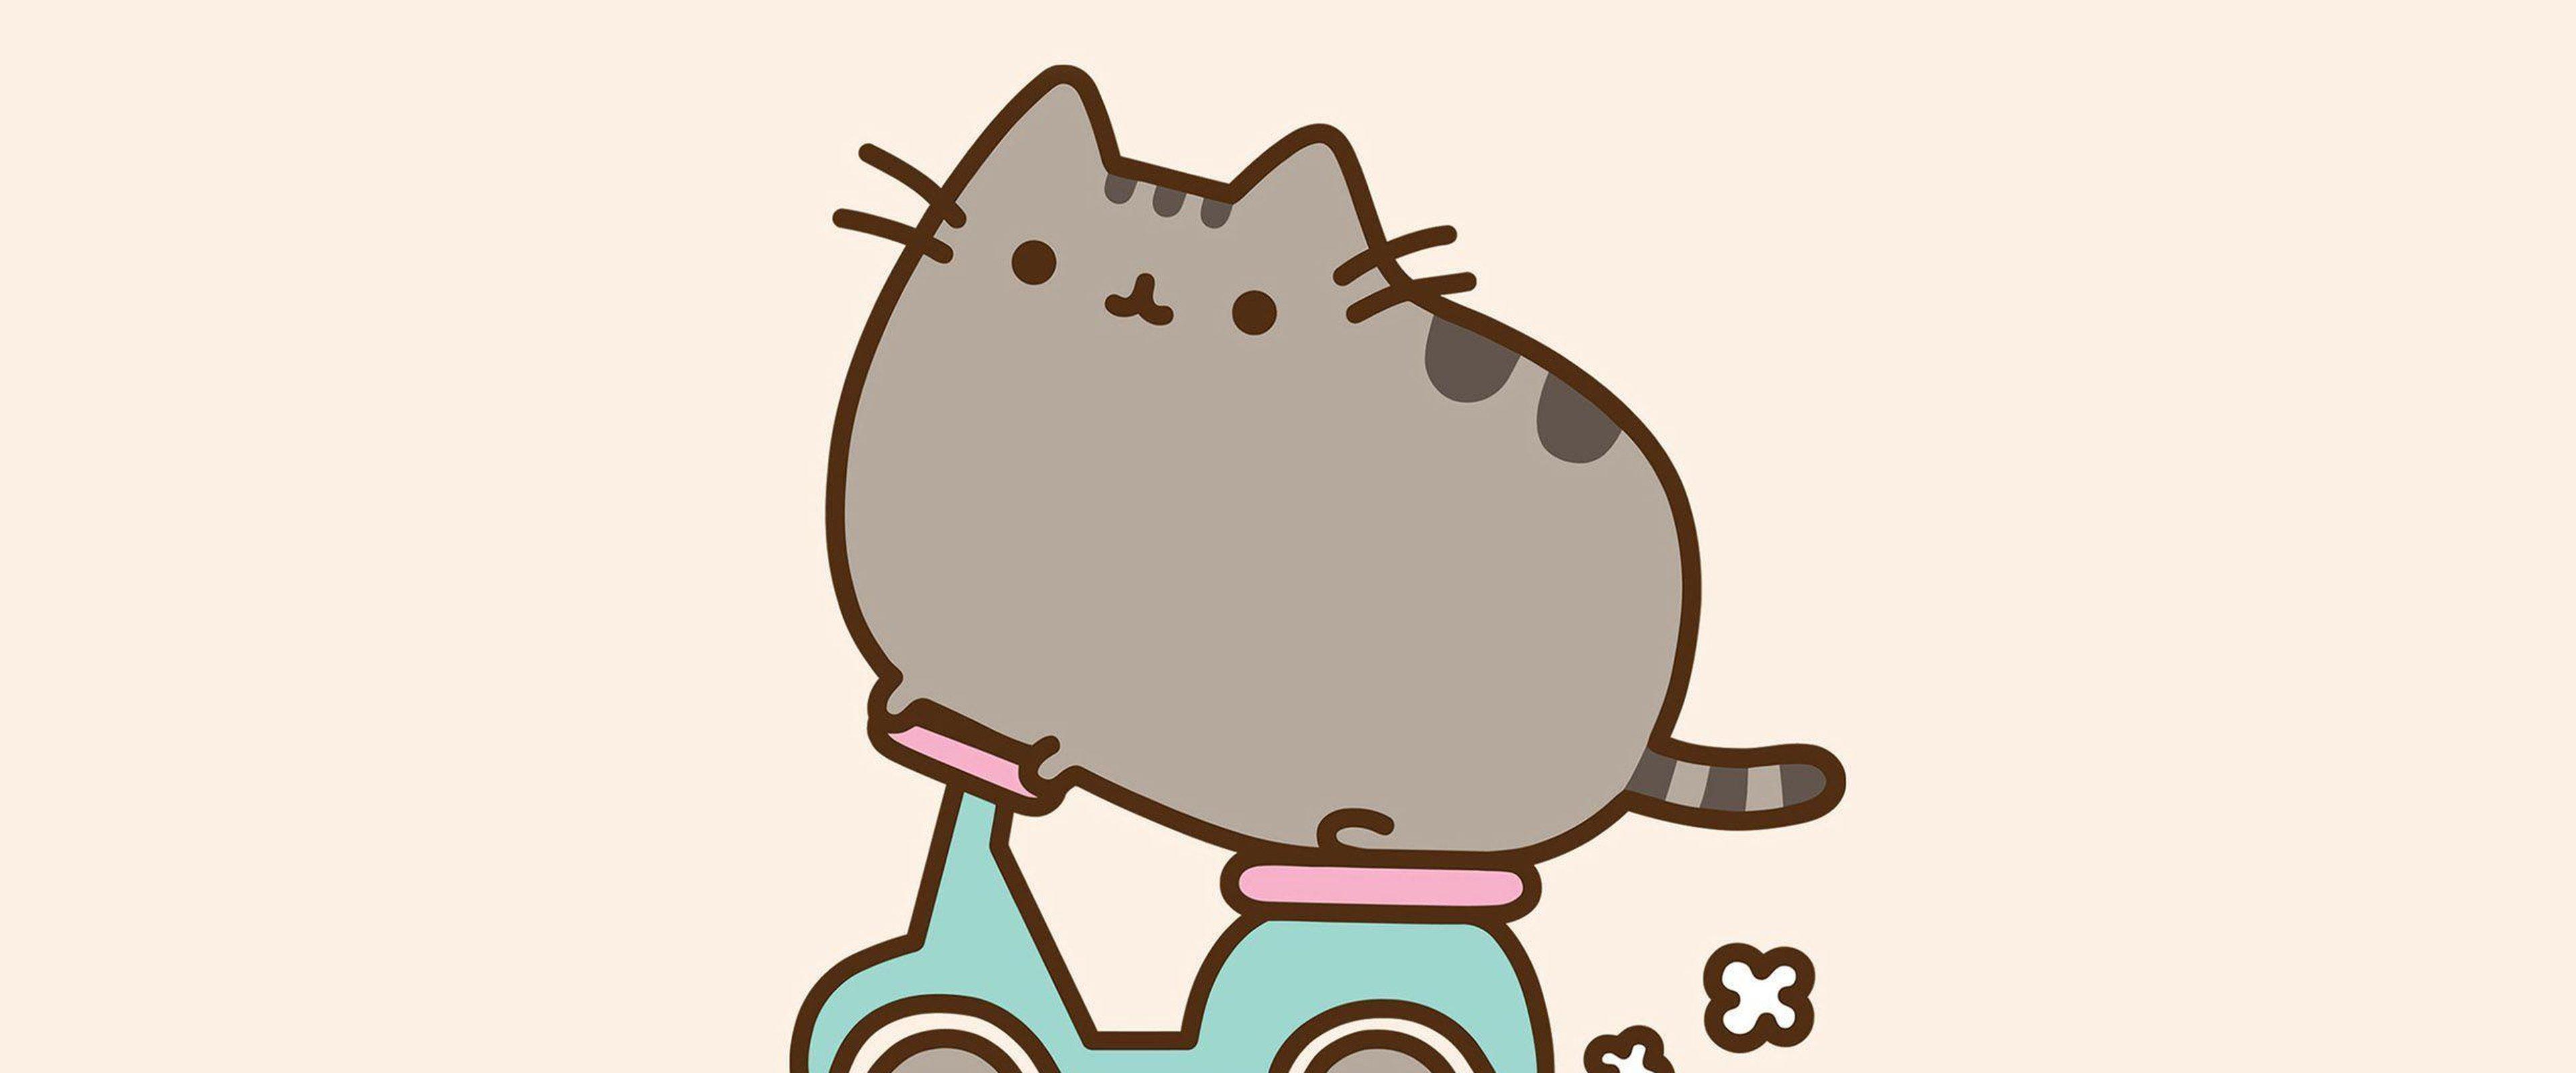 Download Cute Pusheen Cat Over Bike For Uw4k Wallpaper